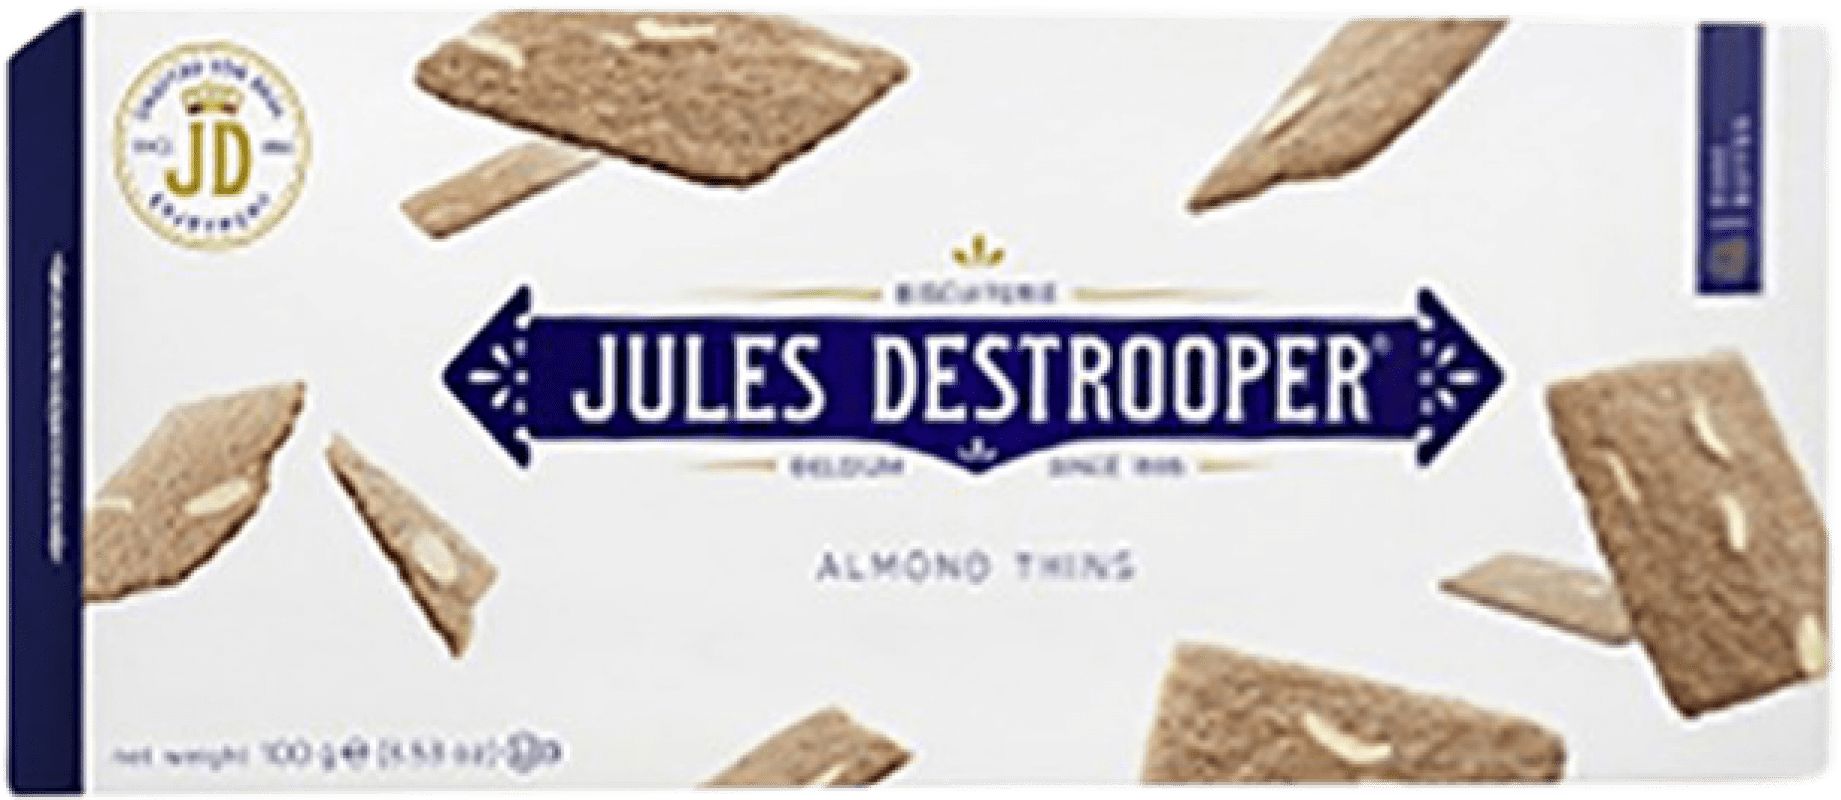 3,95 € Envoi gratuit | Amuse-bouches et Snacks Jules Destrooper Destrooper Belgique